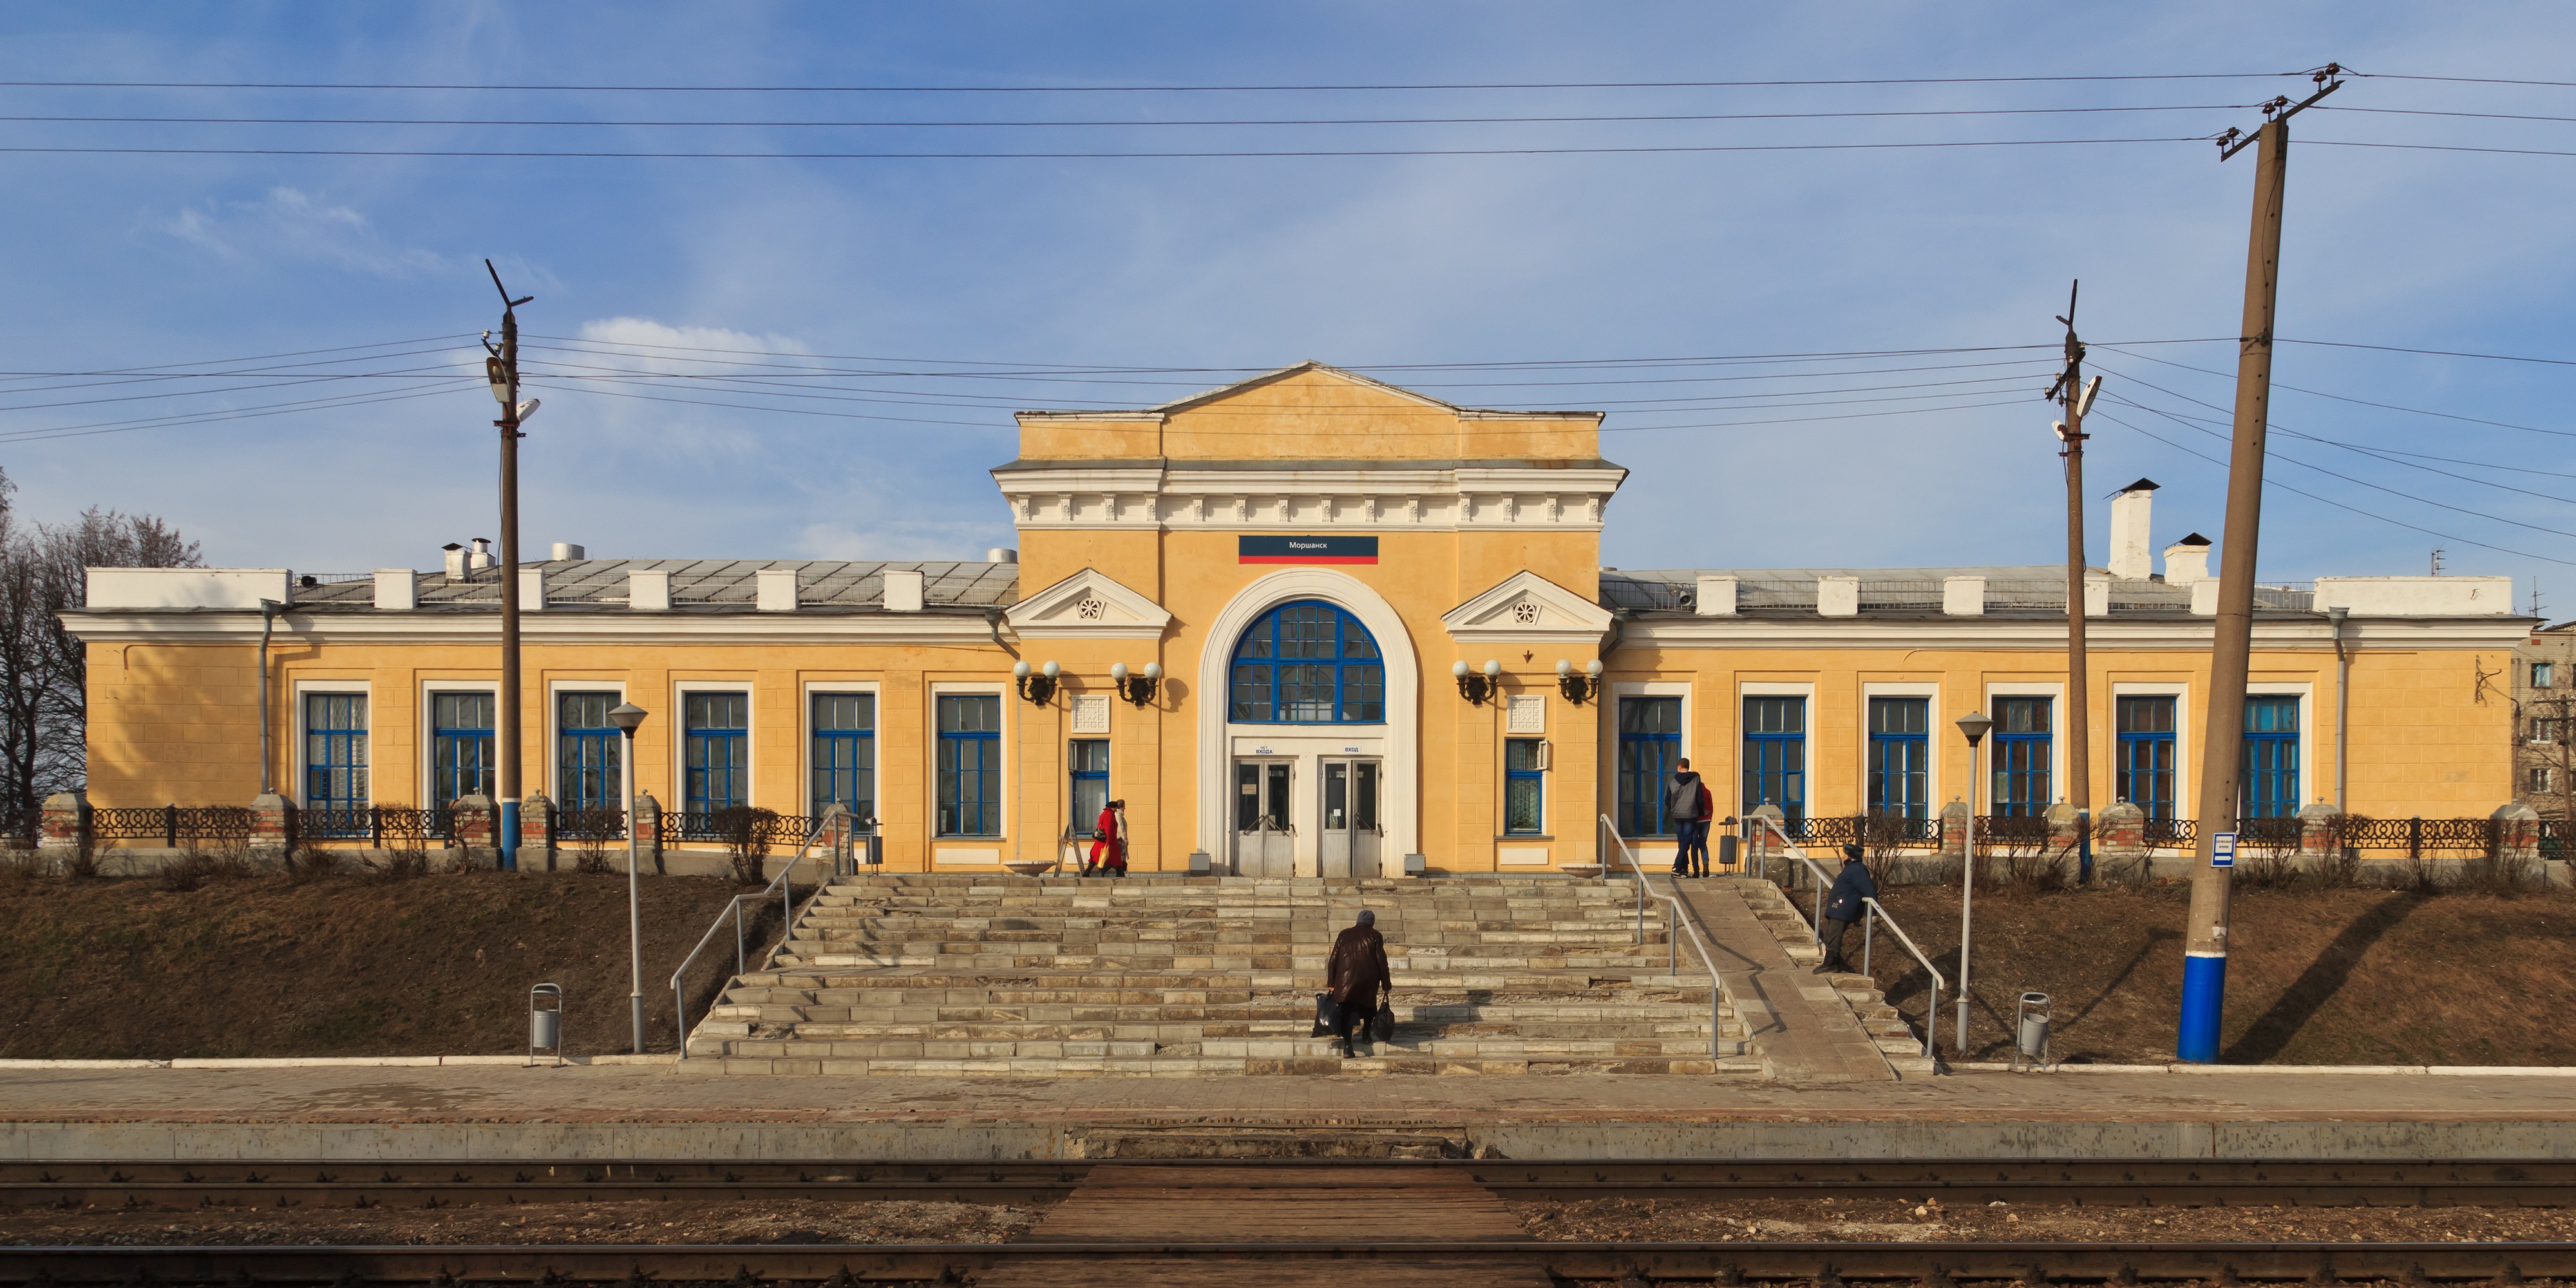 Morshansk (Tambov Oblast) 03-2014 img01 train station